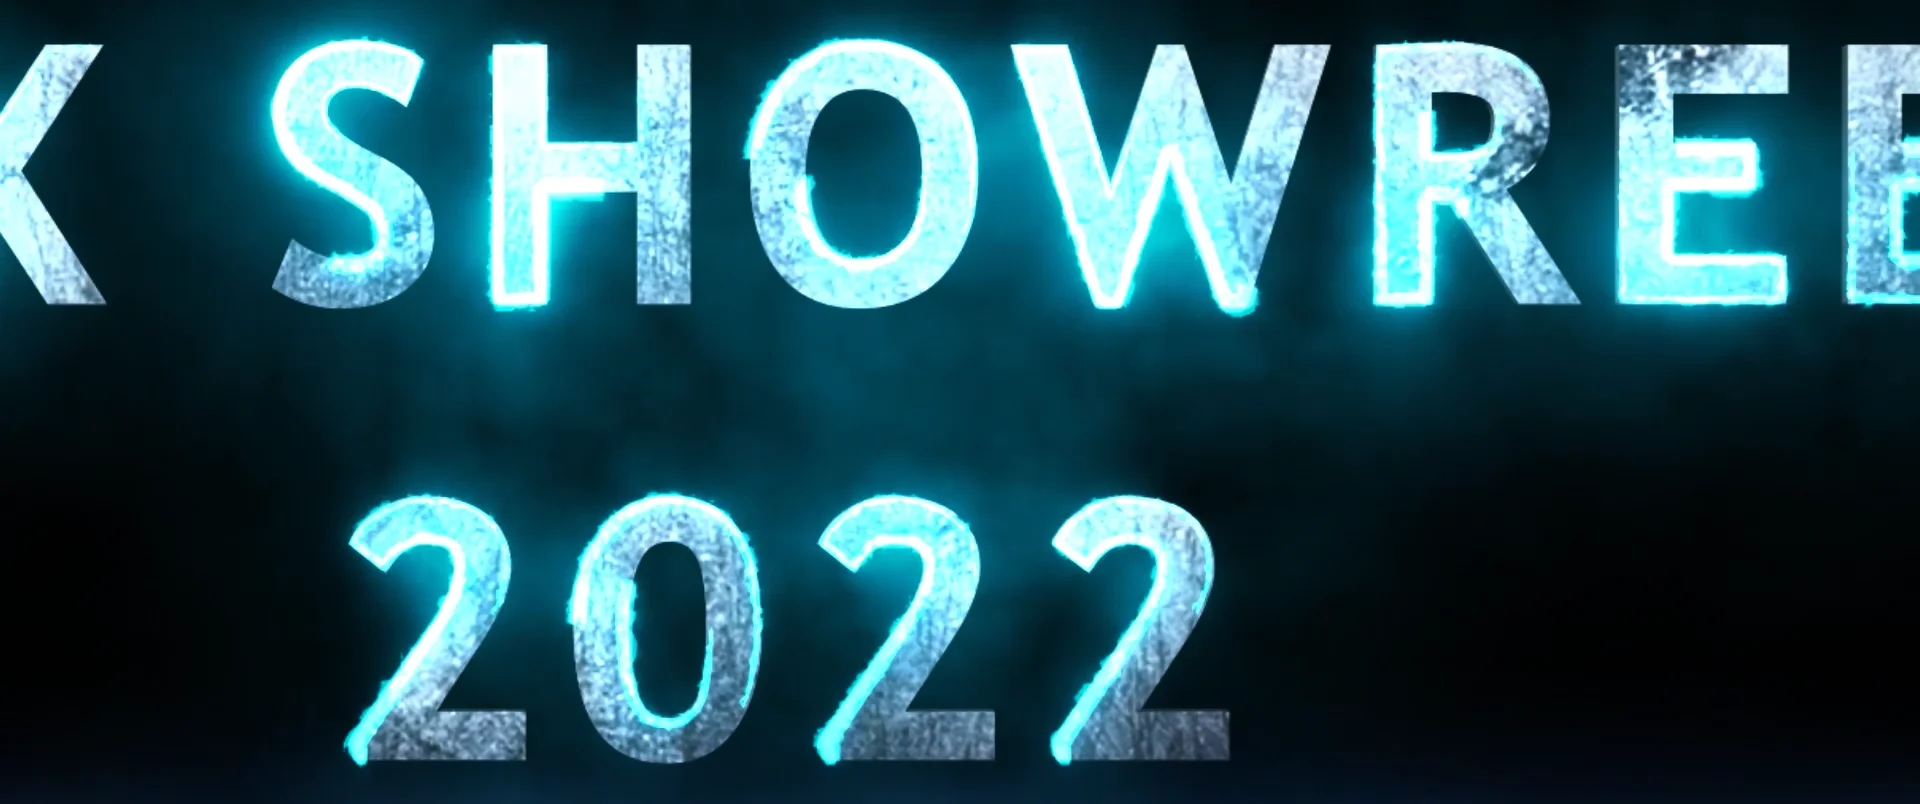 Fx Showreel 2022 on Vimeo